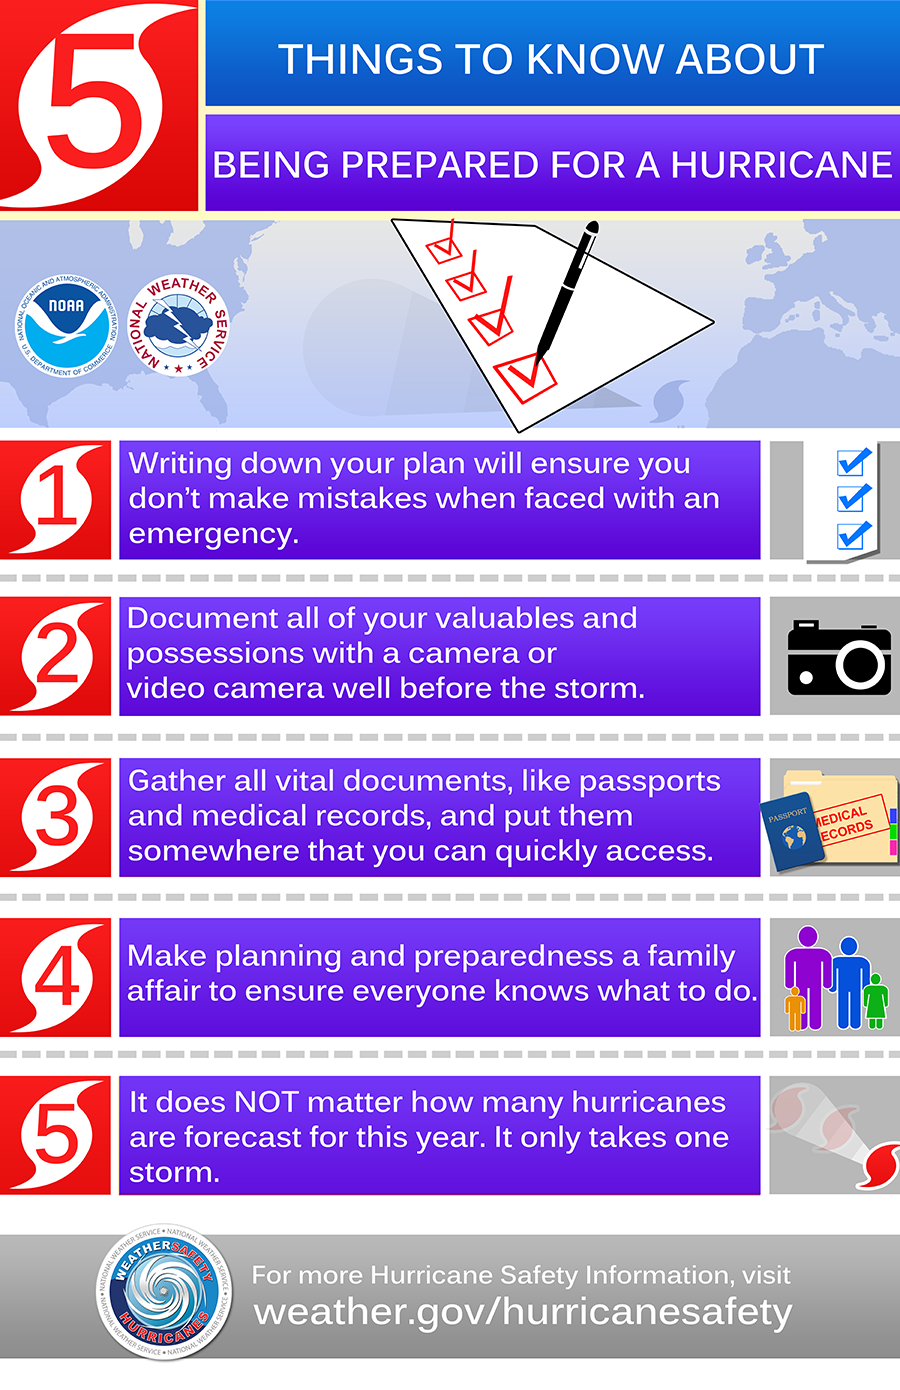 Hurricane preparedredness checklist